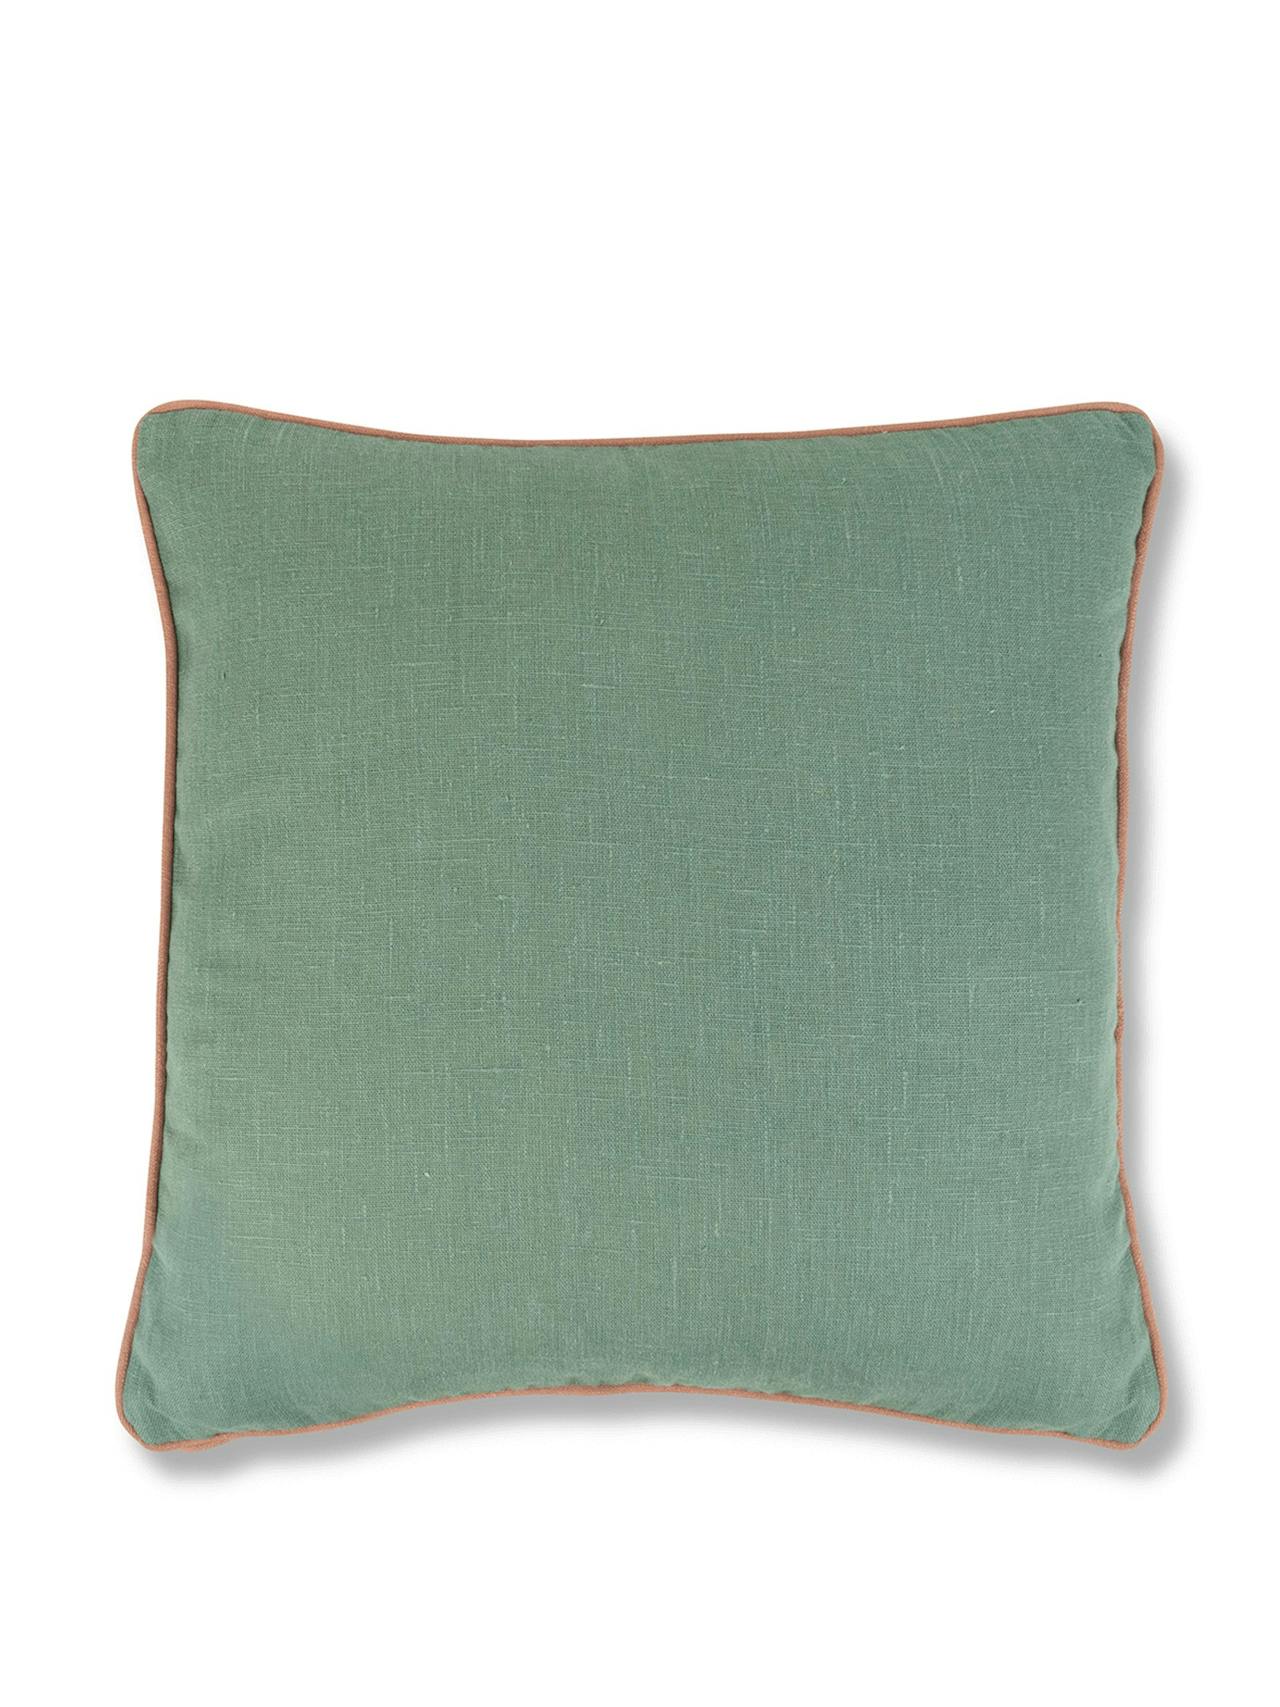 Teal cushion with terracotta sirin trim